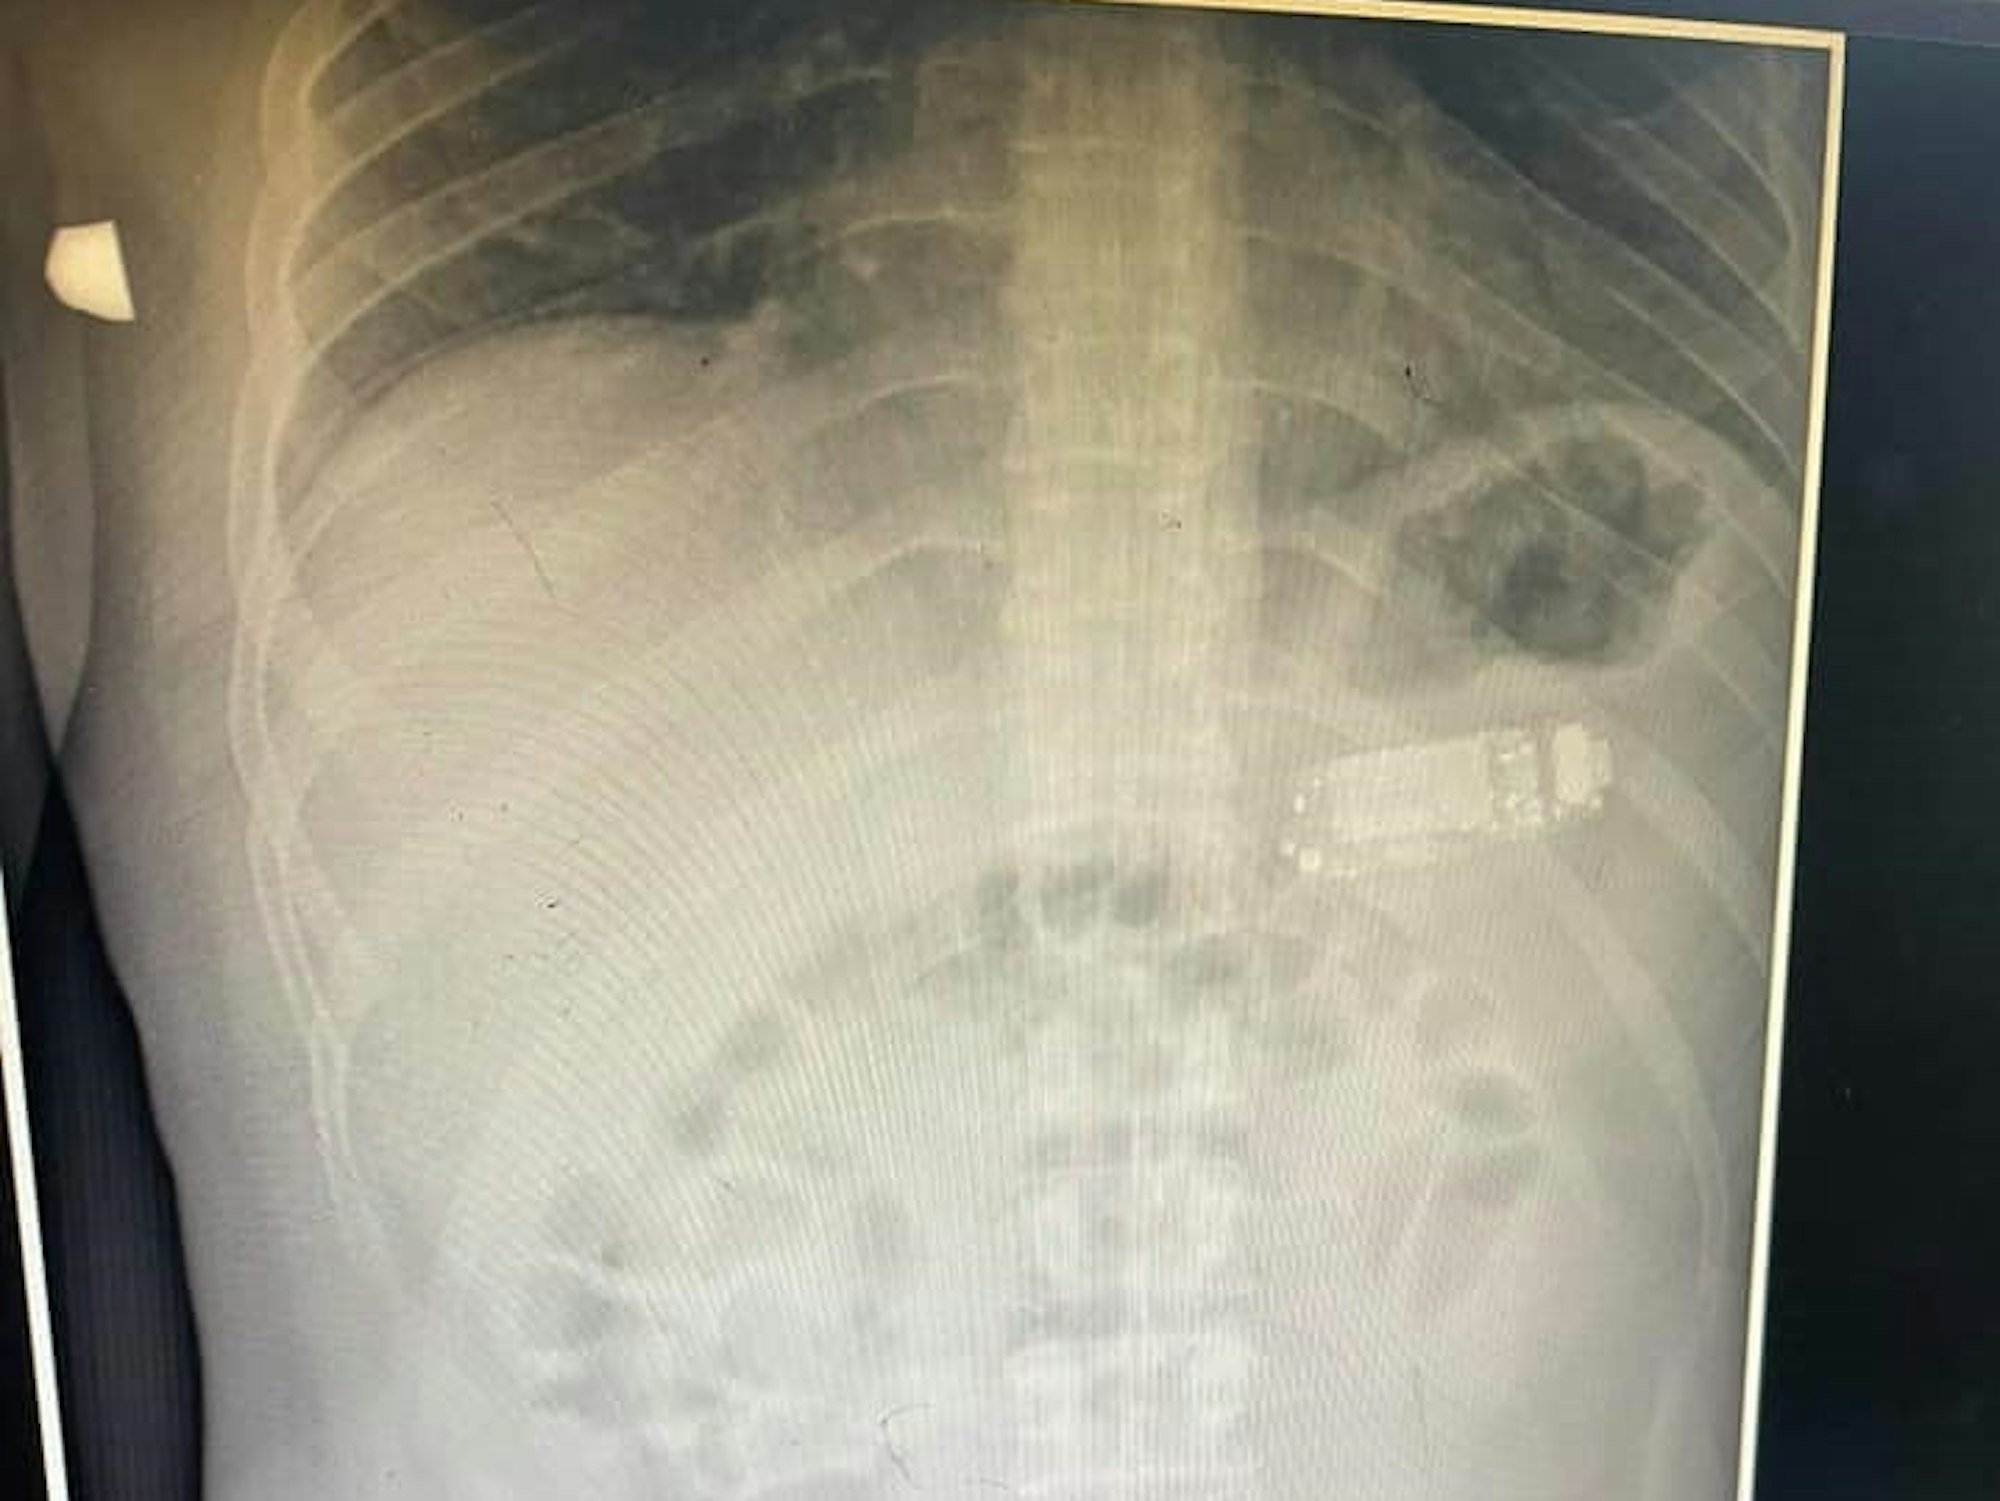 Facebook Skender Telaku am 30.8.2021 Röntgenbild von einem Patienten mit Handy im Magen.